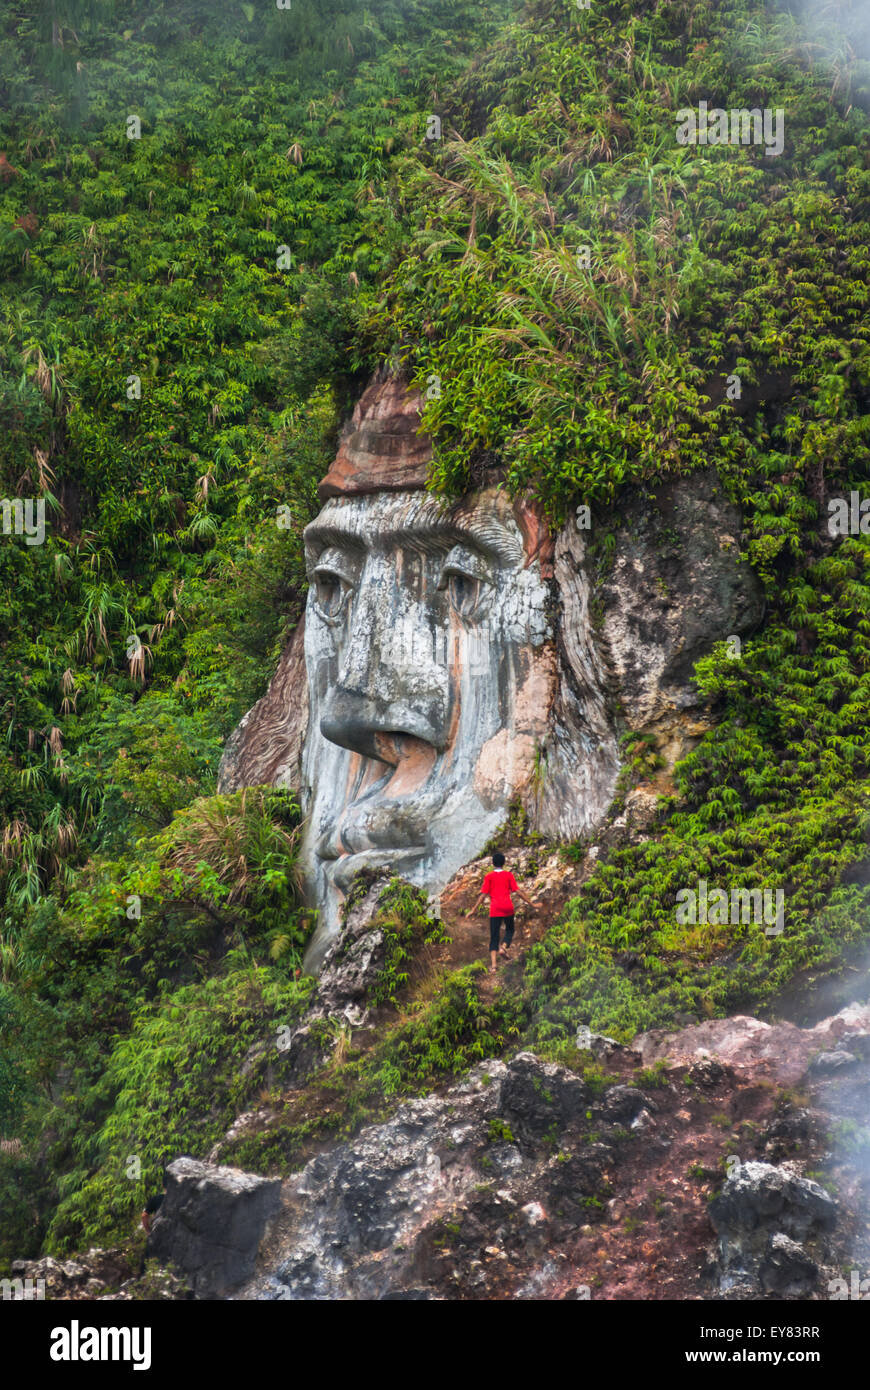 Un visiteur est repéré près d'une formation à visage géant illustrant le caractère de Toar (figure ancestrale) à Bukit Kasih, dans le nord de Sulawesi, en Indonésie. Banque D'Images